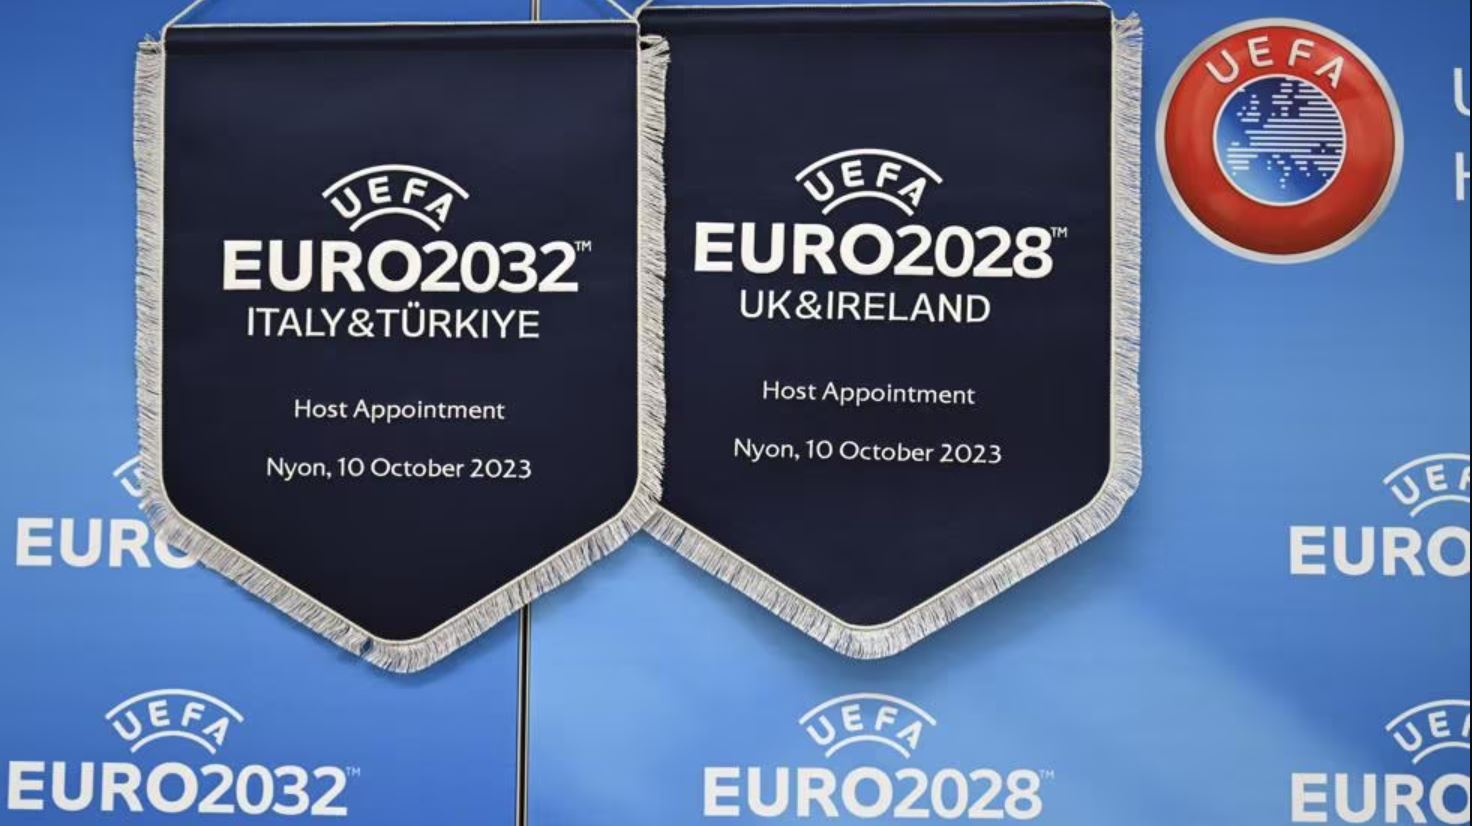 euro 2028 - euro 2032